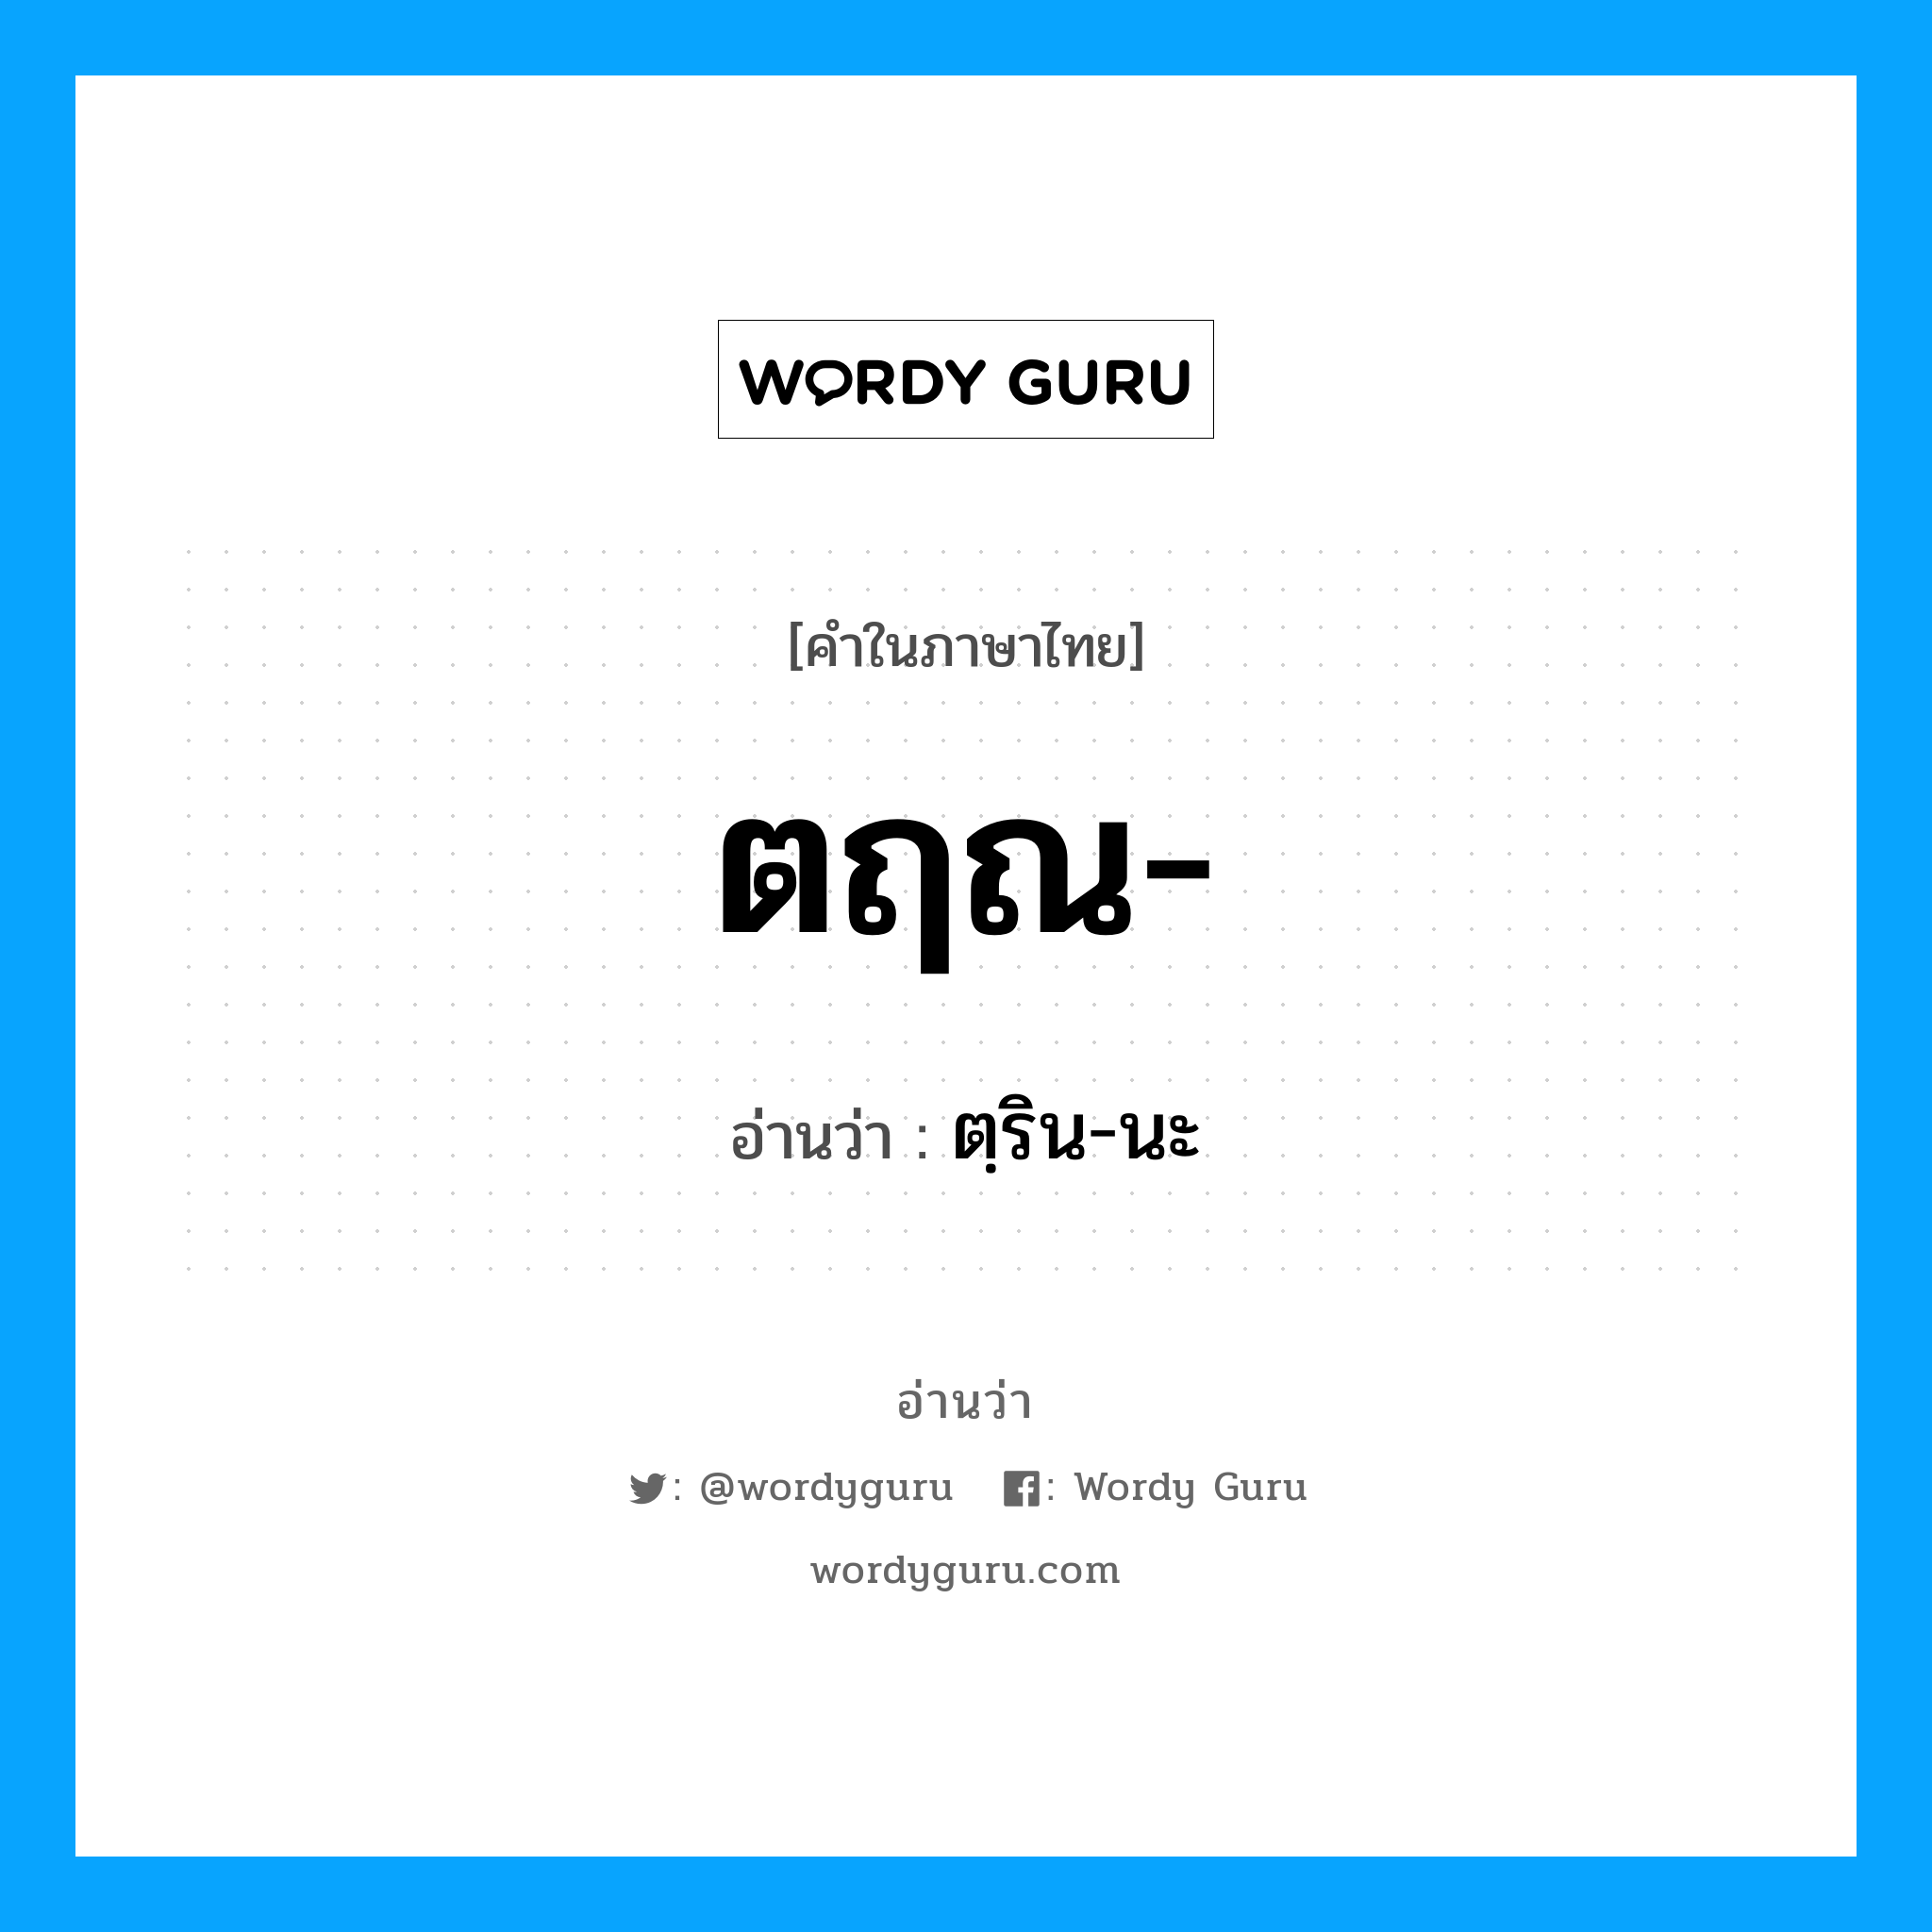 ตฺริน-นะ เป็นคำอ่านของคำไหน?, คำในภาษาไทย ตฺริน-นะ อ่านว่า ตฤณ-